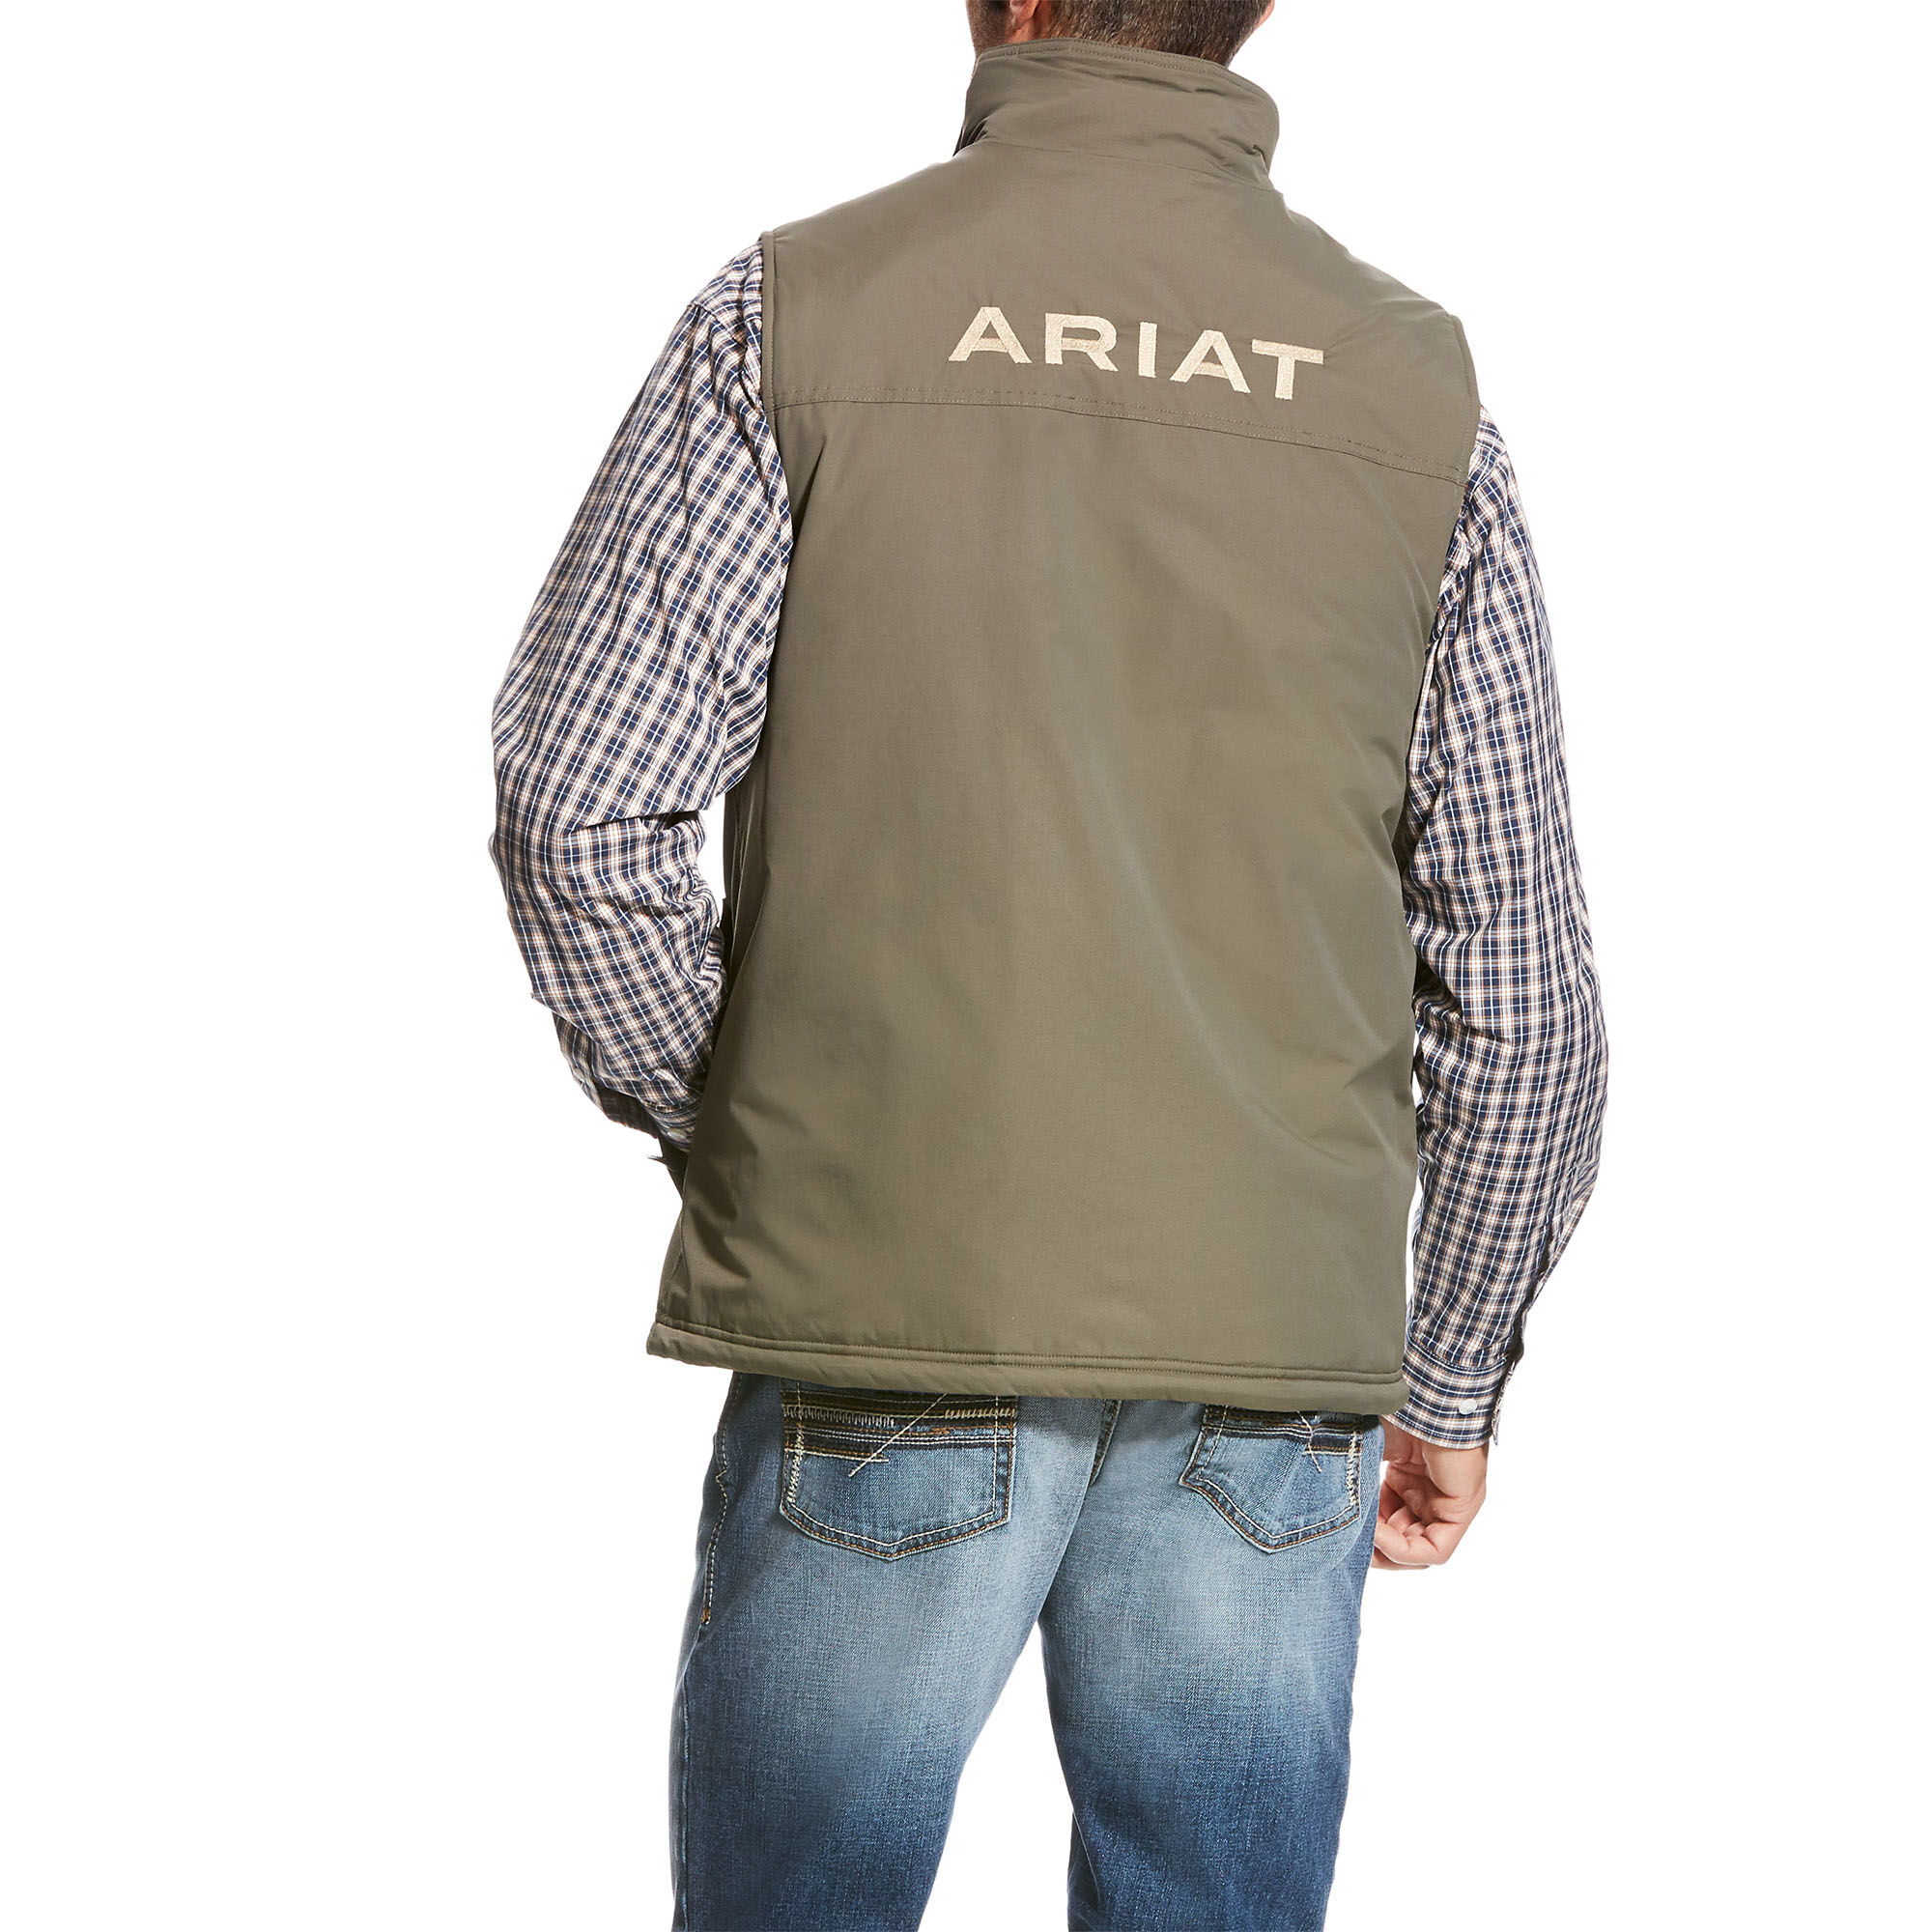 ariat team vest